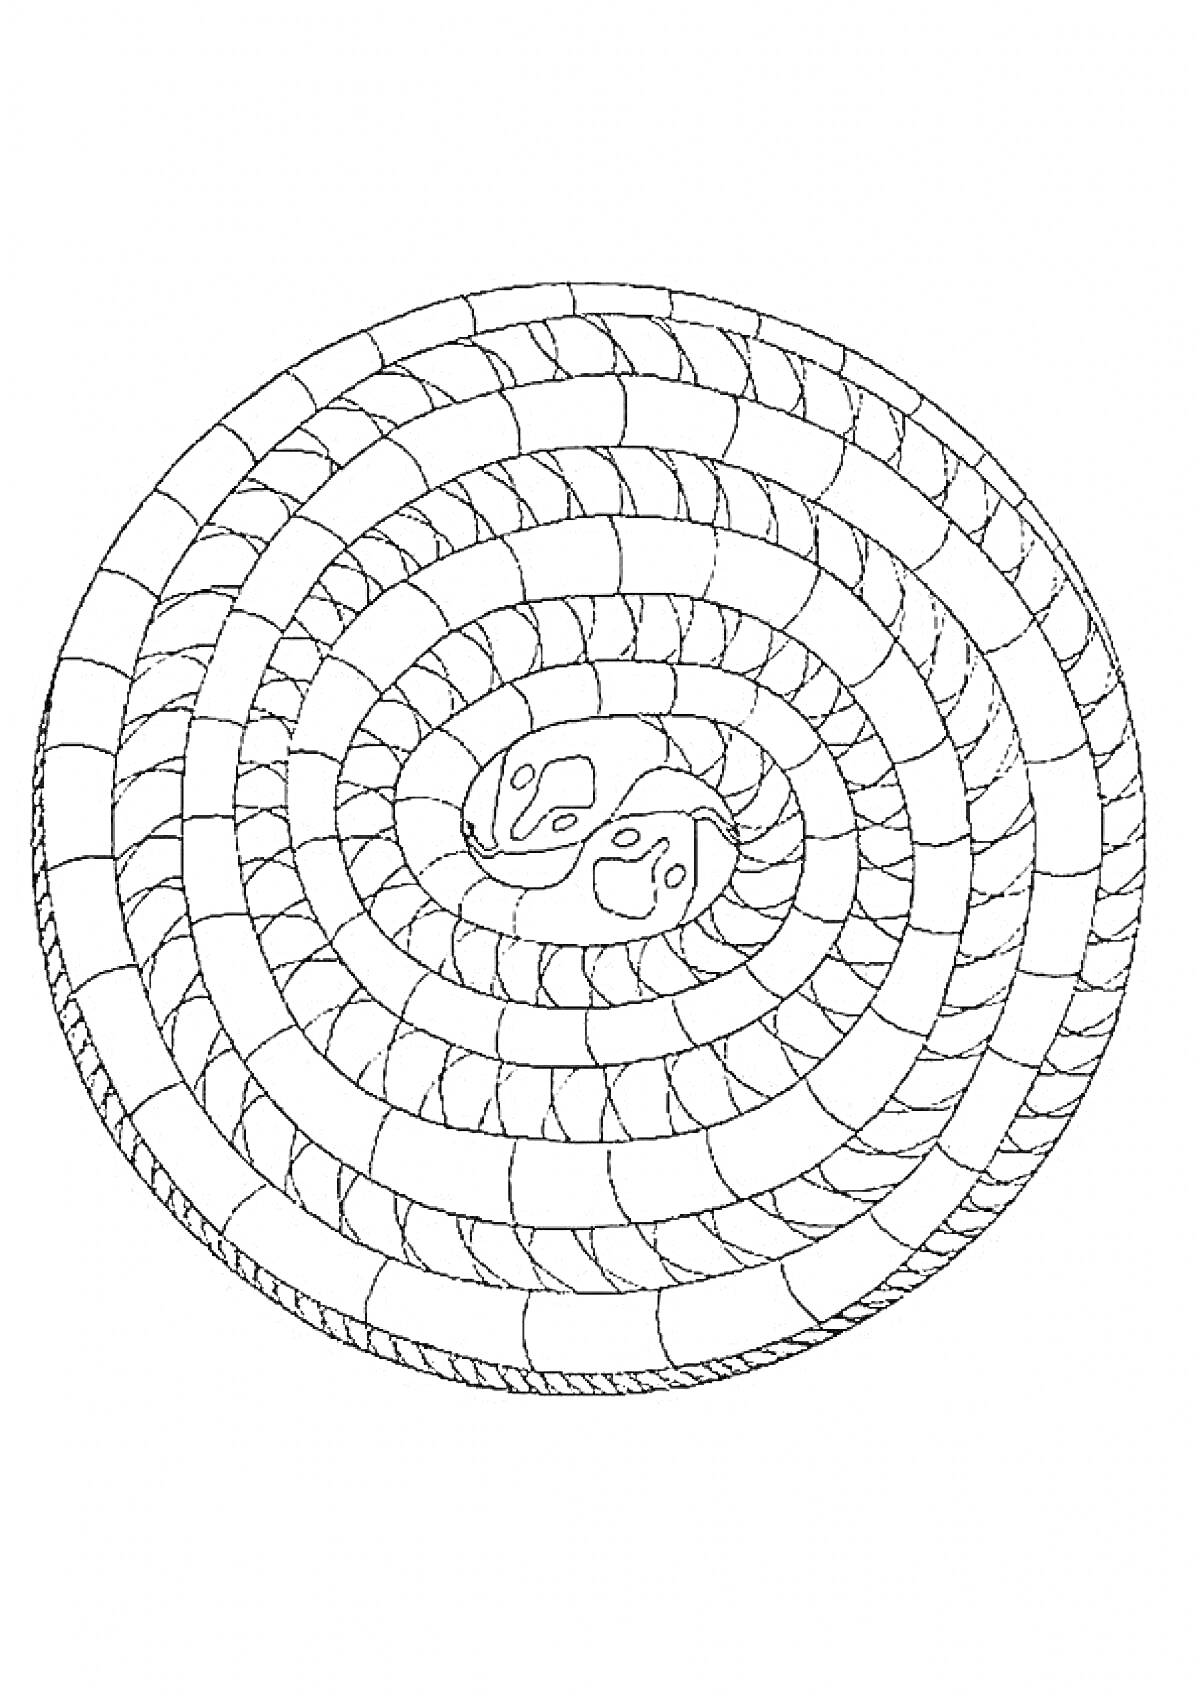 Раскраска Спиральная раскраска с зигзагообразным узором и элементами Инь-Ян в центре